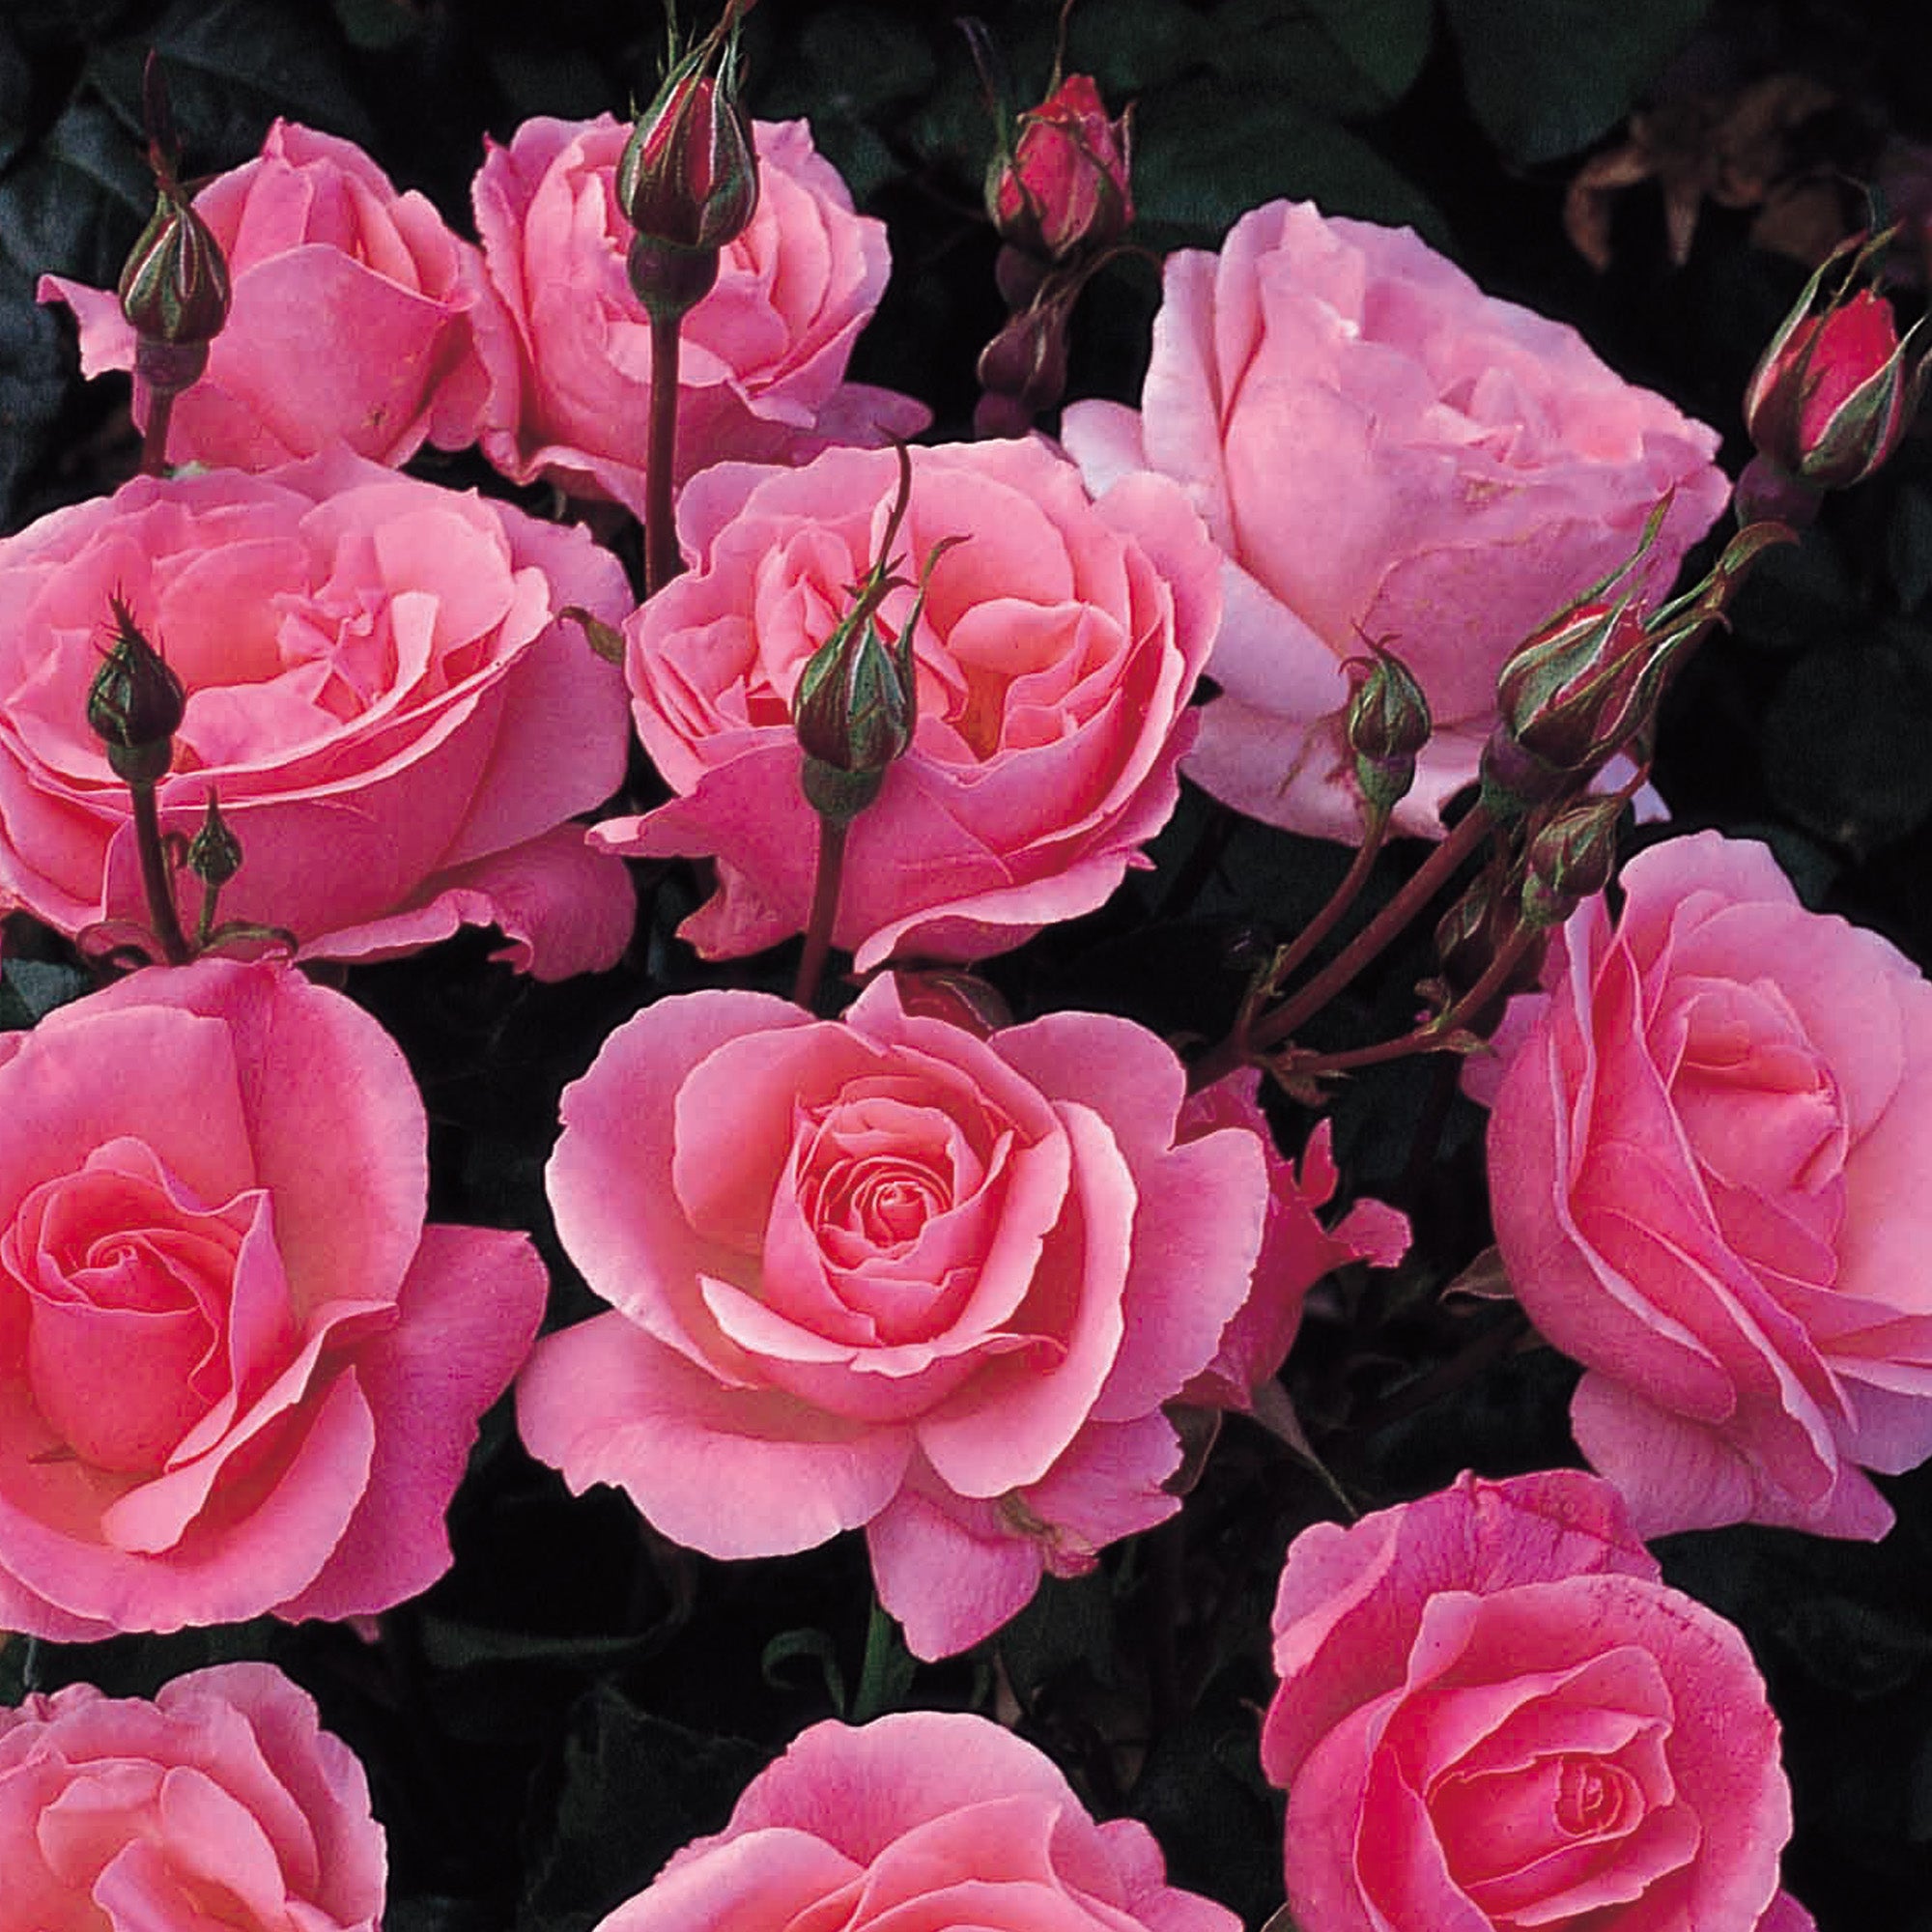 Rose 'Queen Elizabeth' (Floribunda Rose)